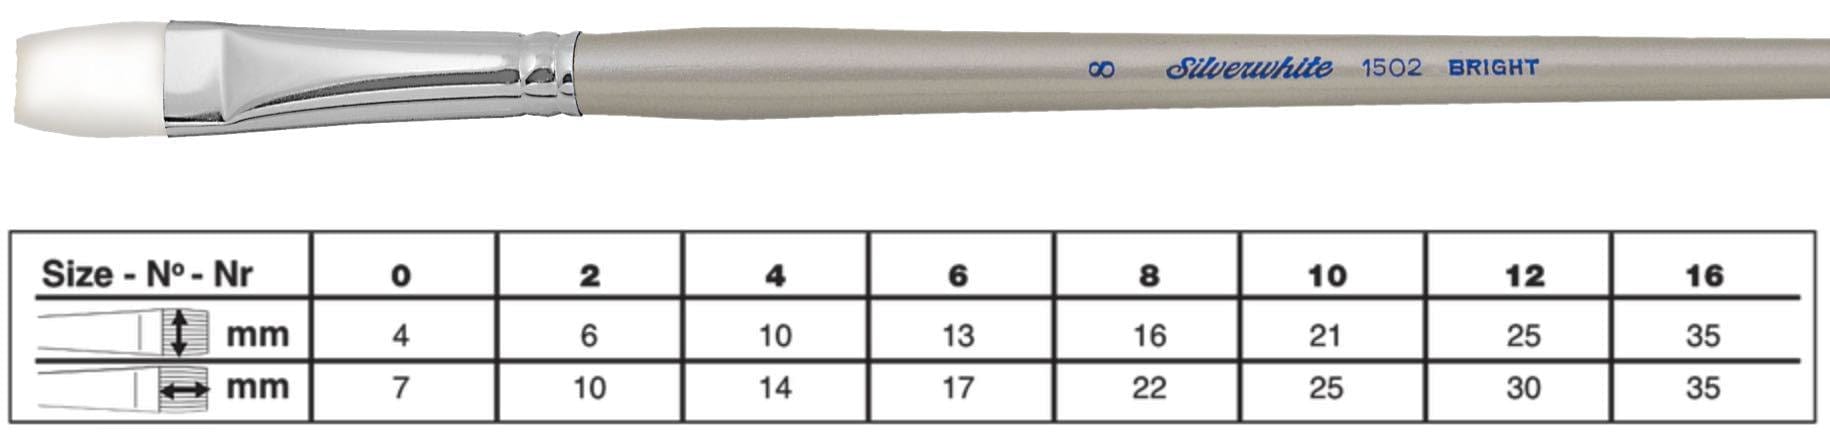 SILVER BRUSH SILVER BRUSH 10 (21mm x 25mm) Silver Brush 1502 Silverwhite Long Handle